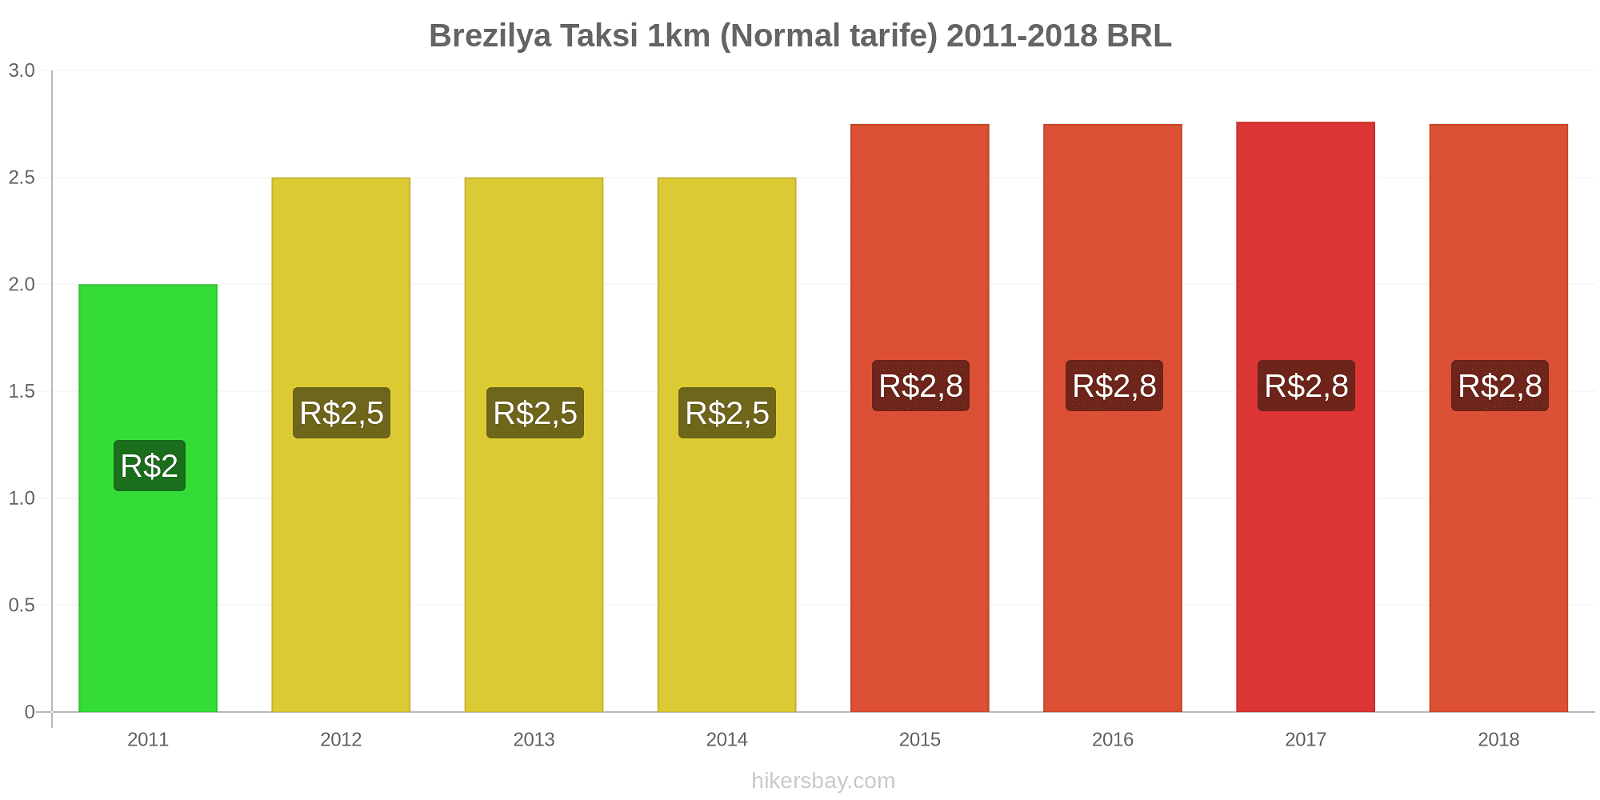 Brezilya fiyat değişiklikleri Taksi 1km (Normal tarife) hikersbay.com